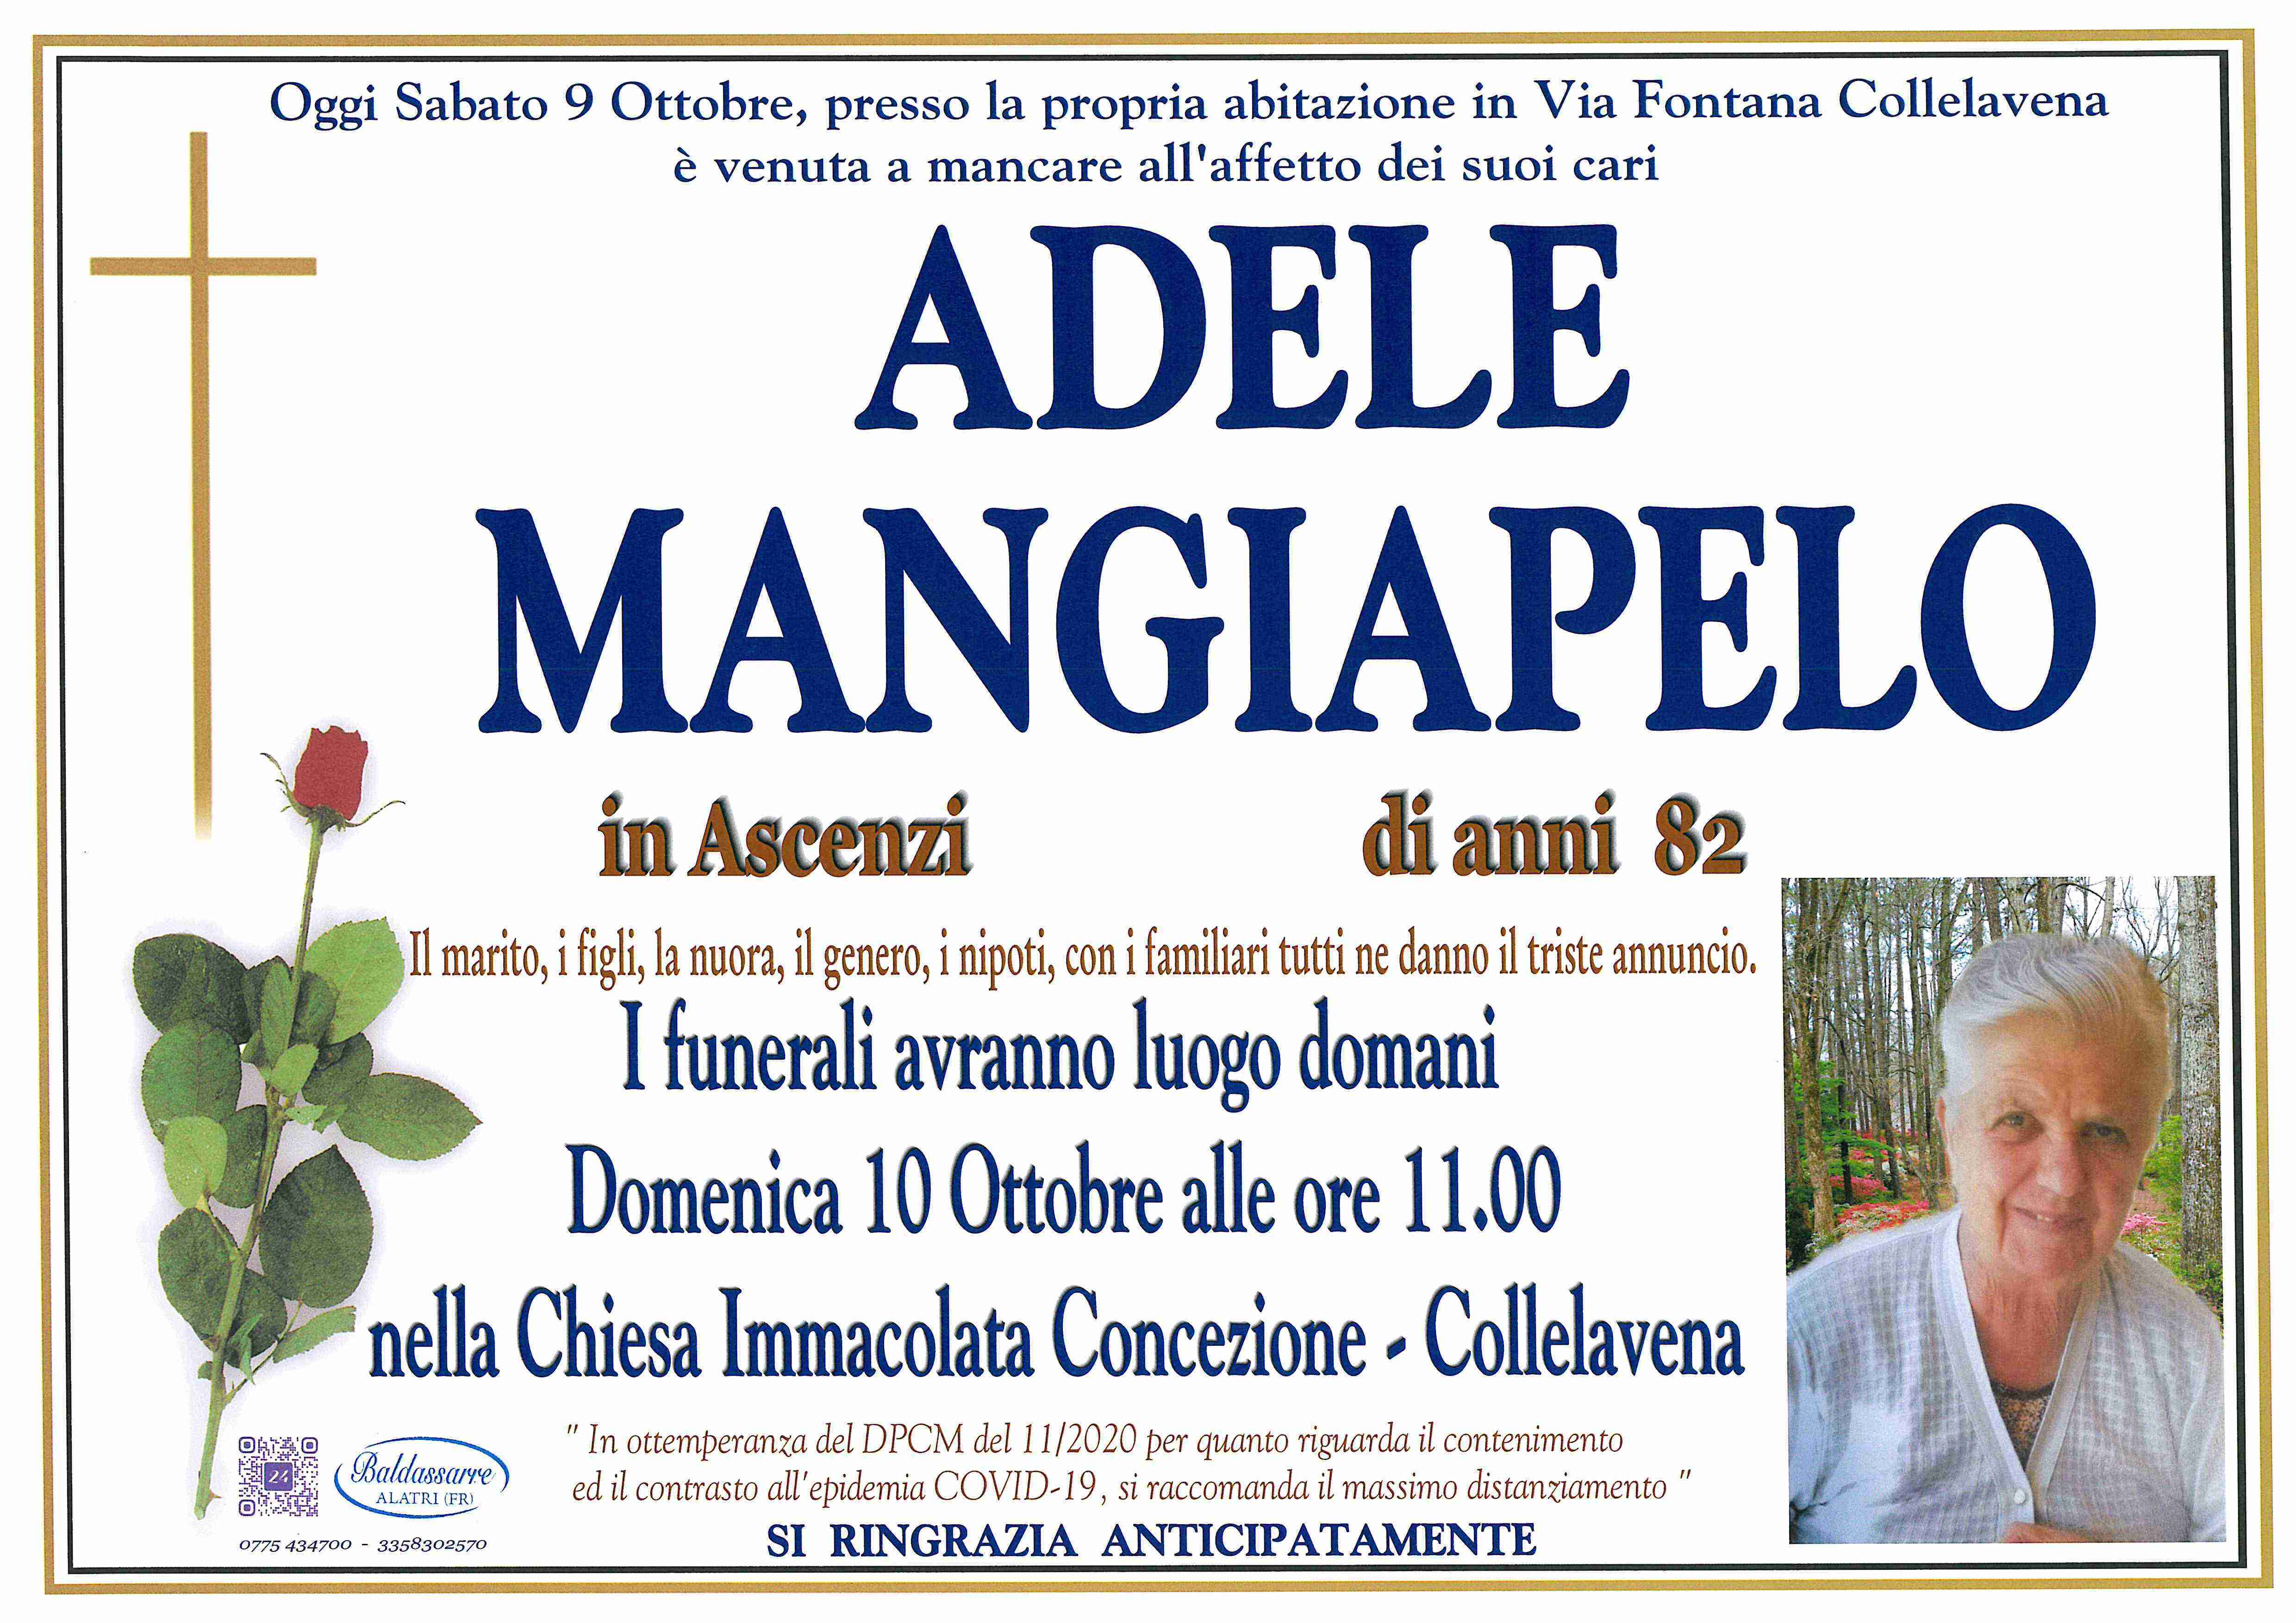 Adele Mangiapelo